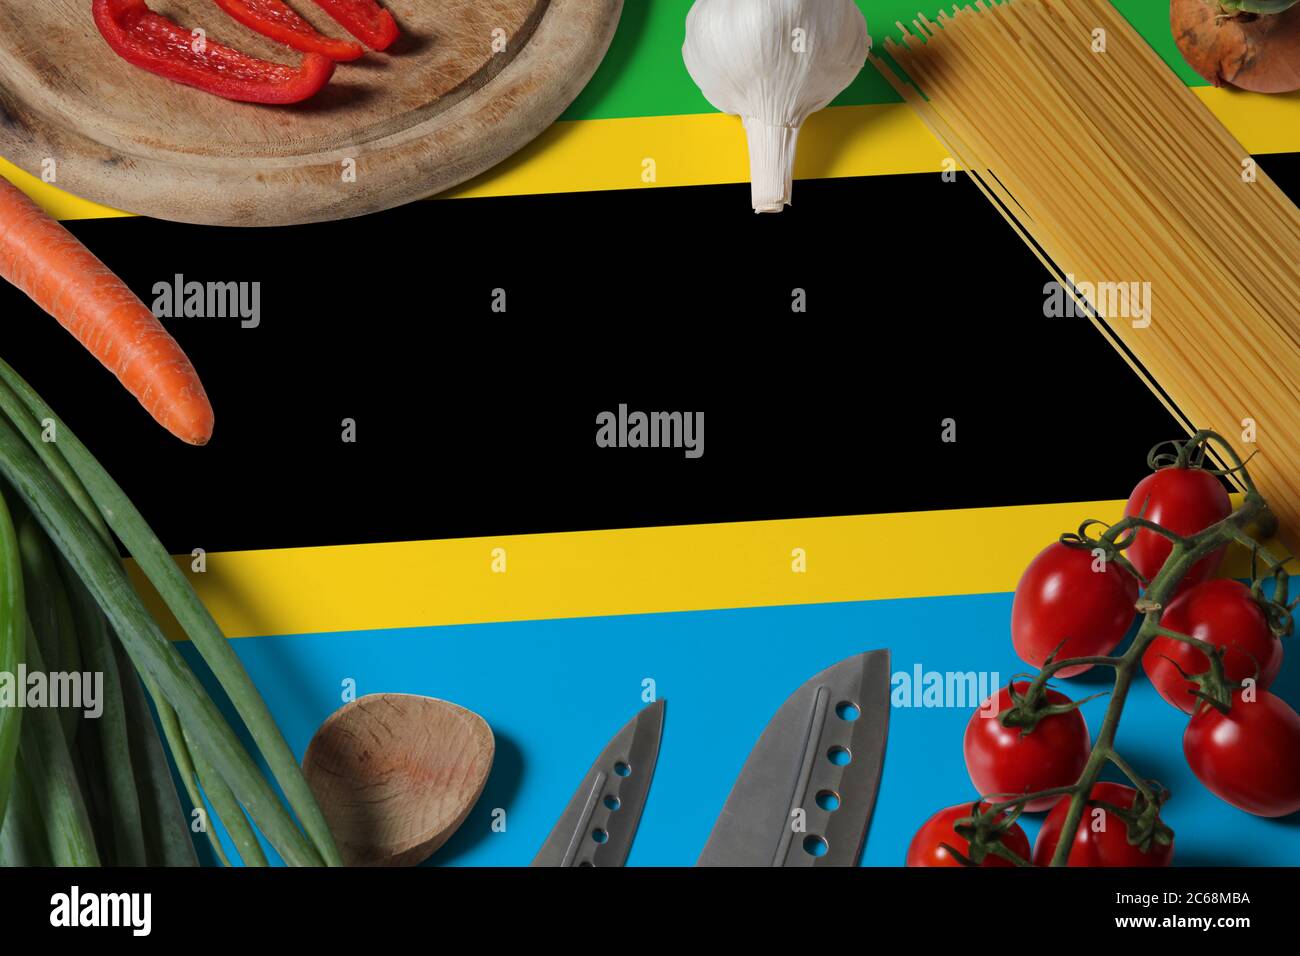 Drapeau tanzanien sur les légumes frais et couteau concept table en bois. Concept de cuisine avec thème de préparation. Banque D'Images